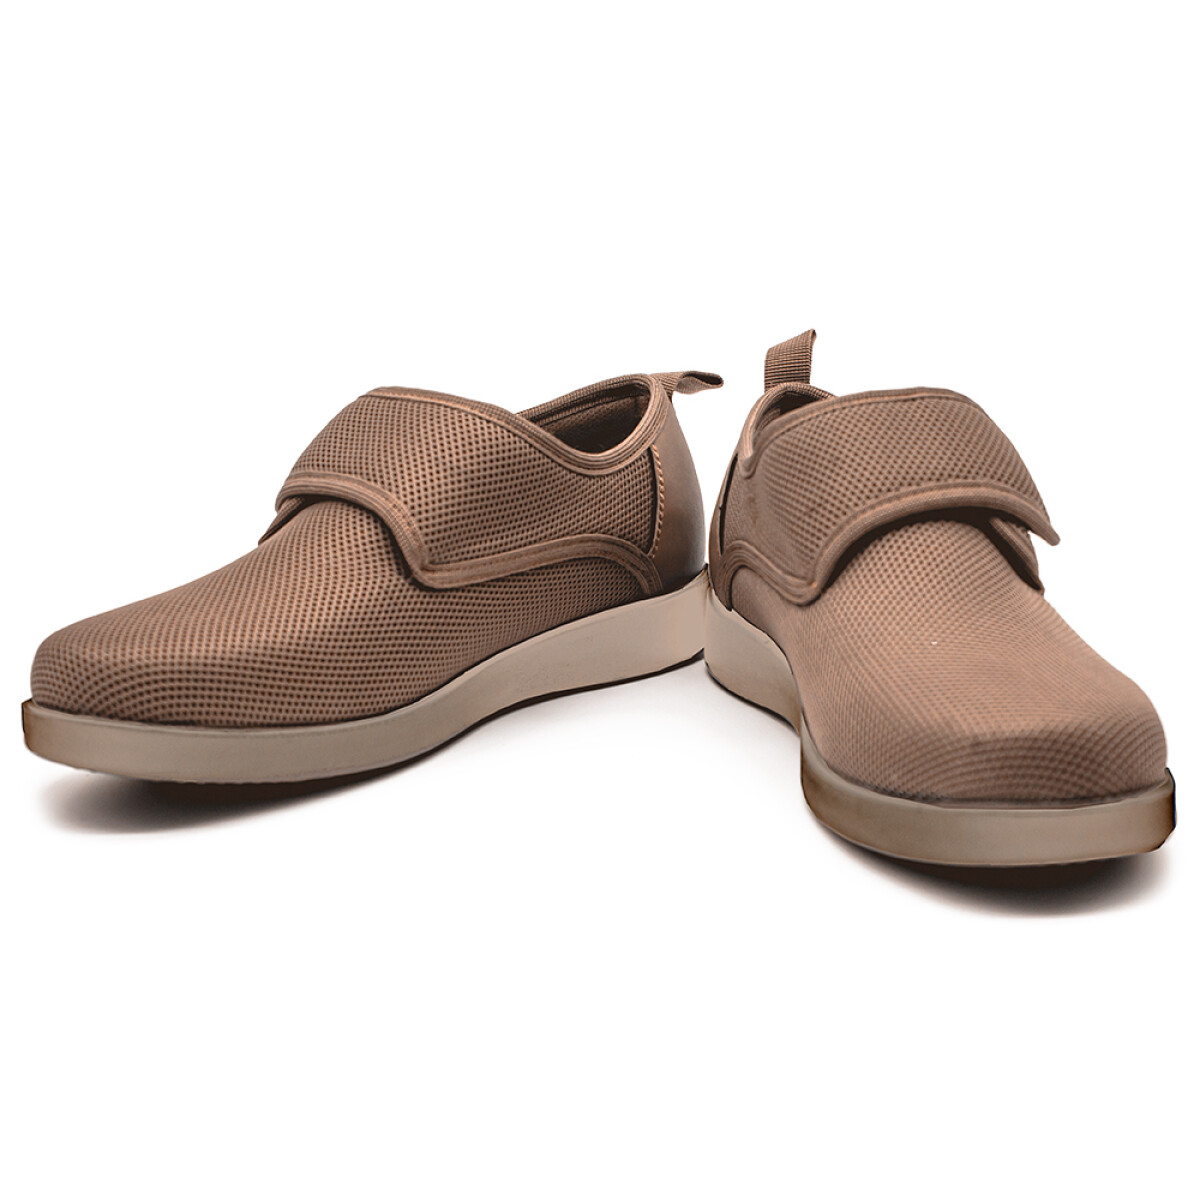 Zapatos Confortables - GoldCare - Marrón 